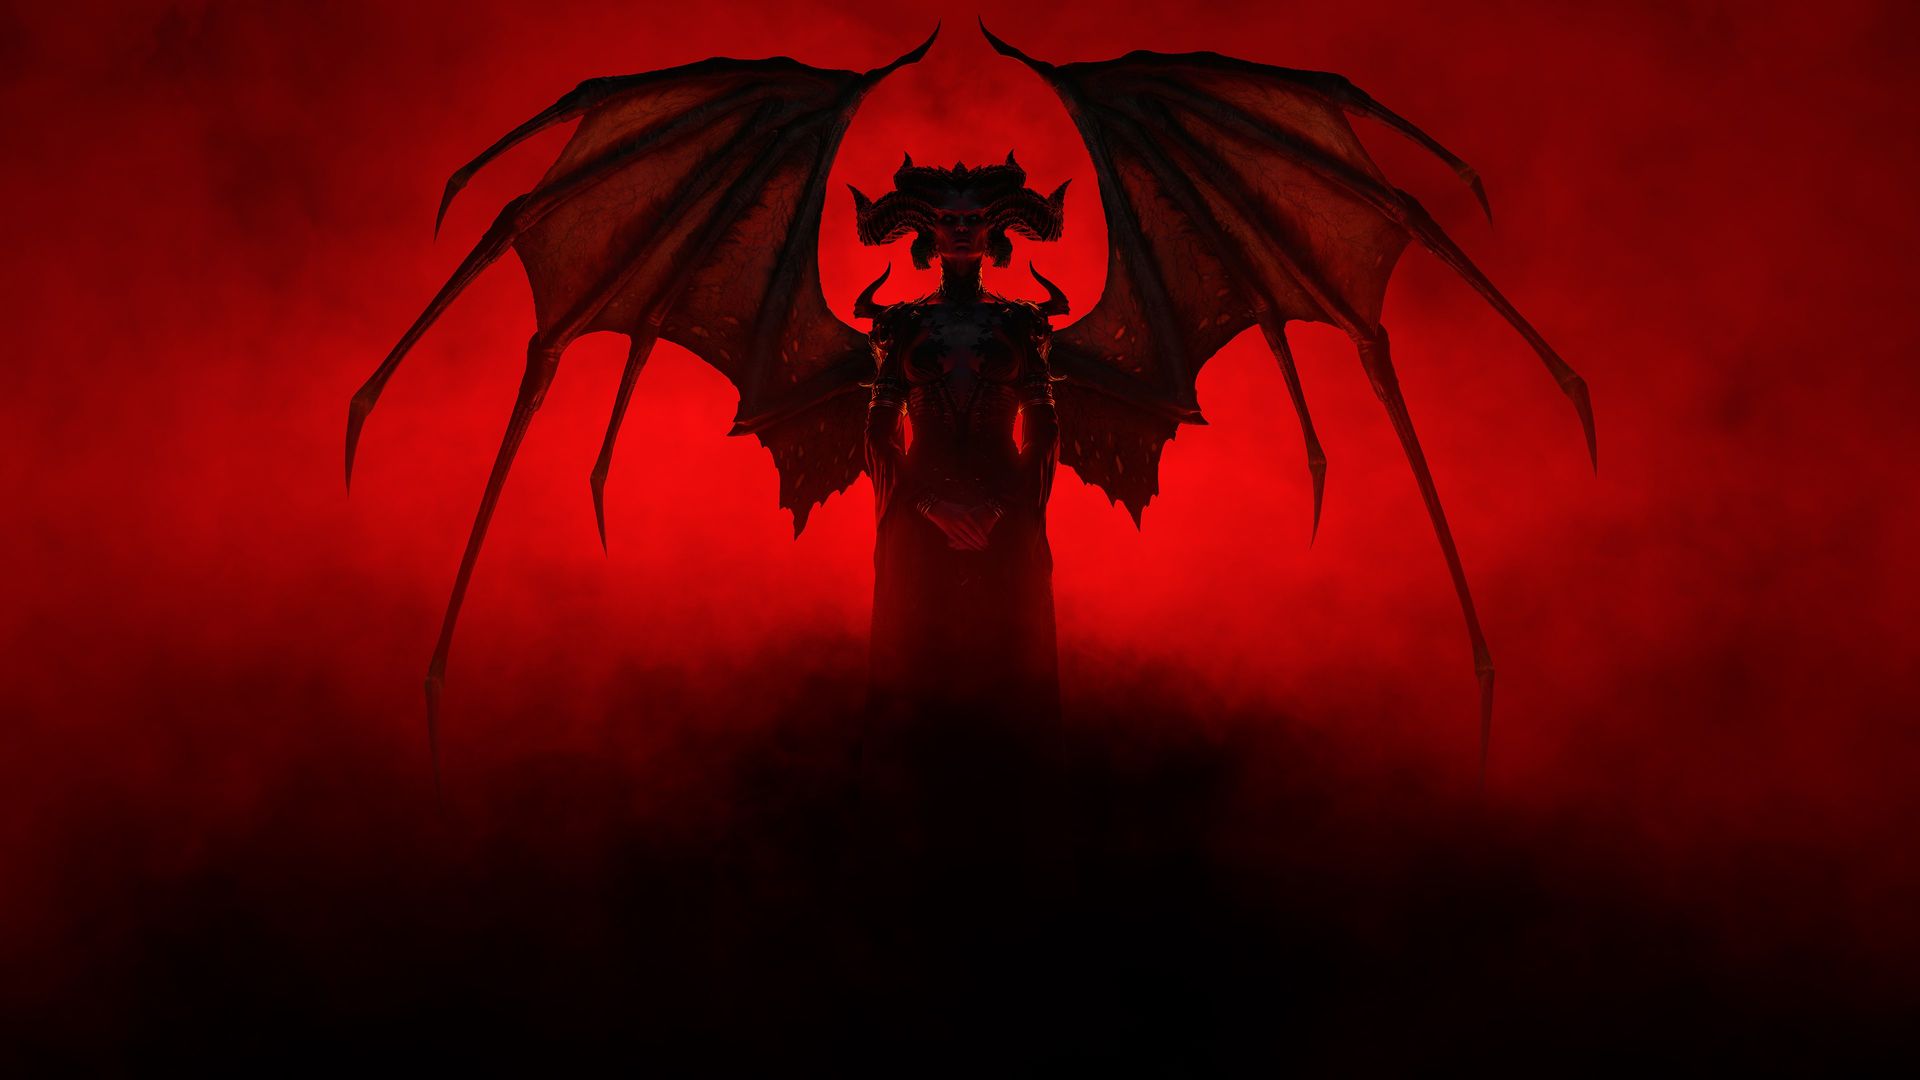 Diablo IV Xbox Game Pass'e geliyor